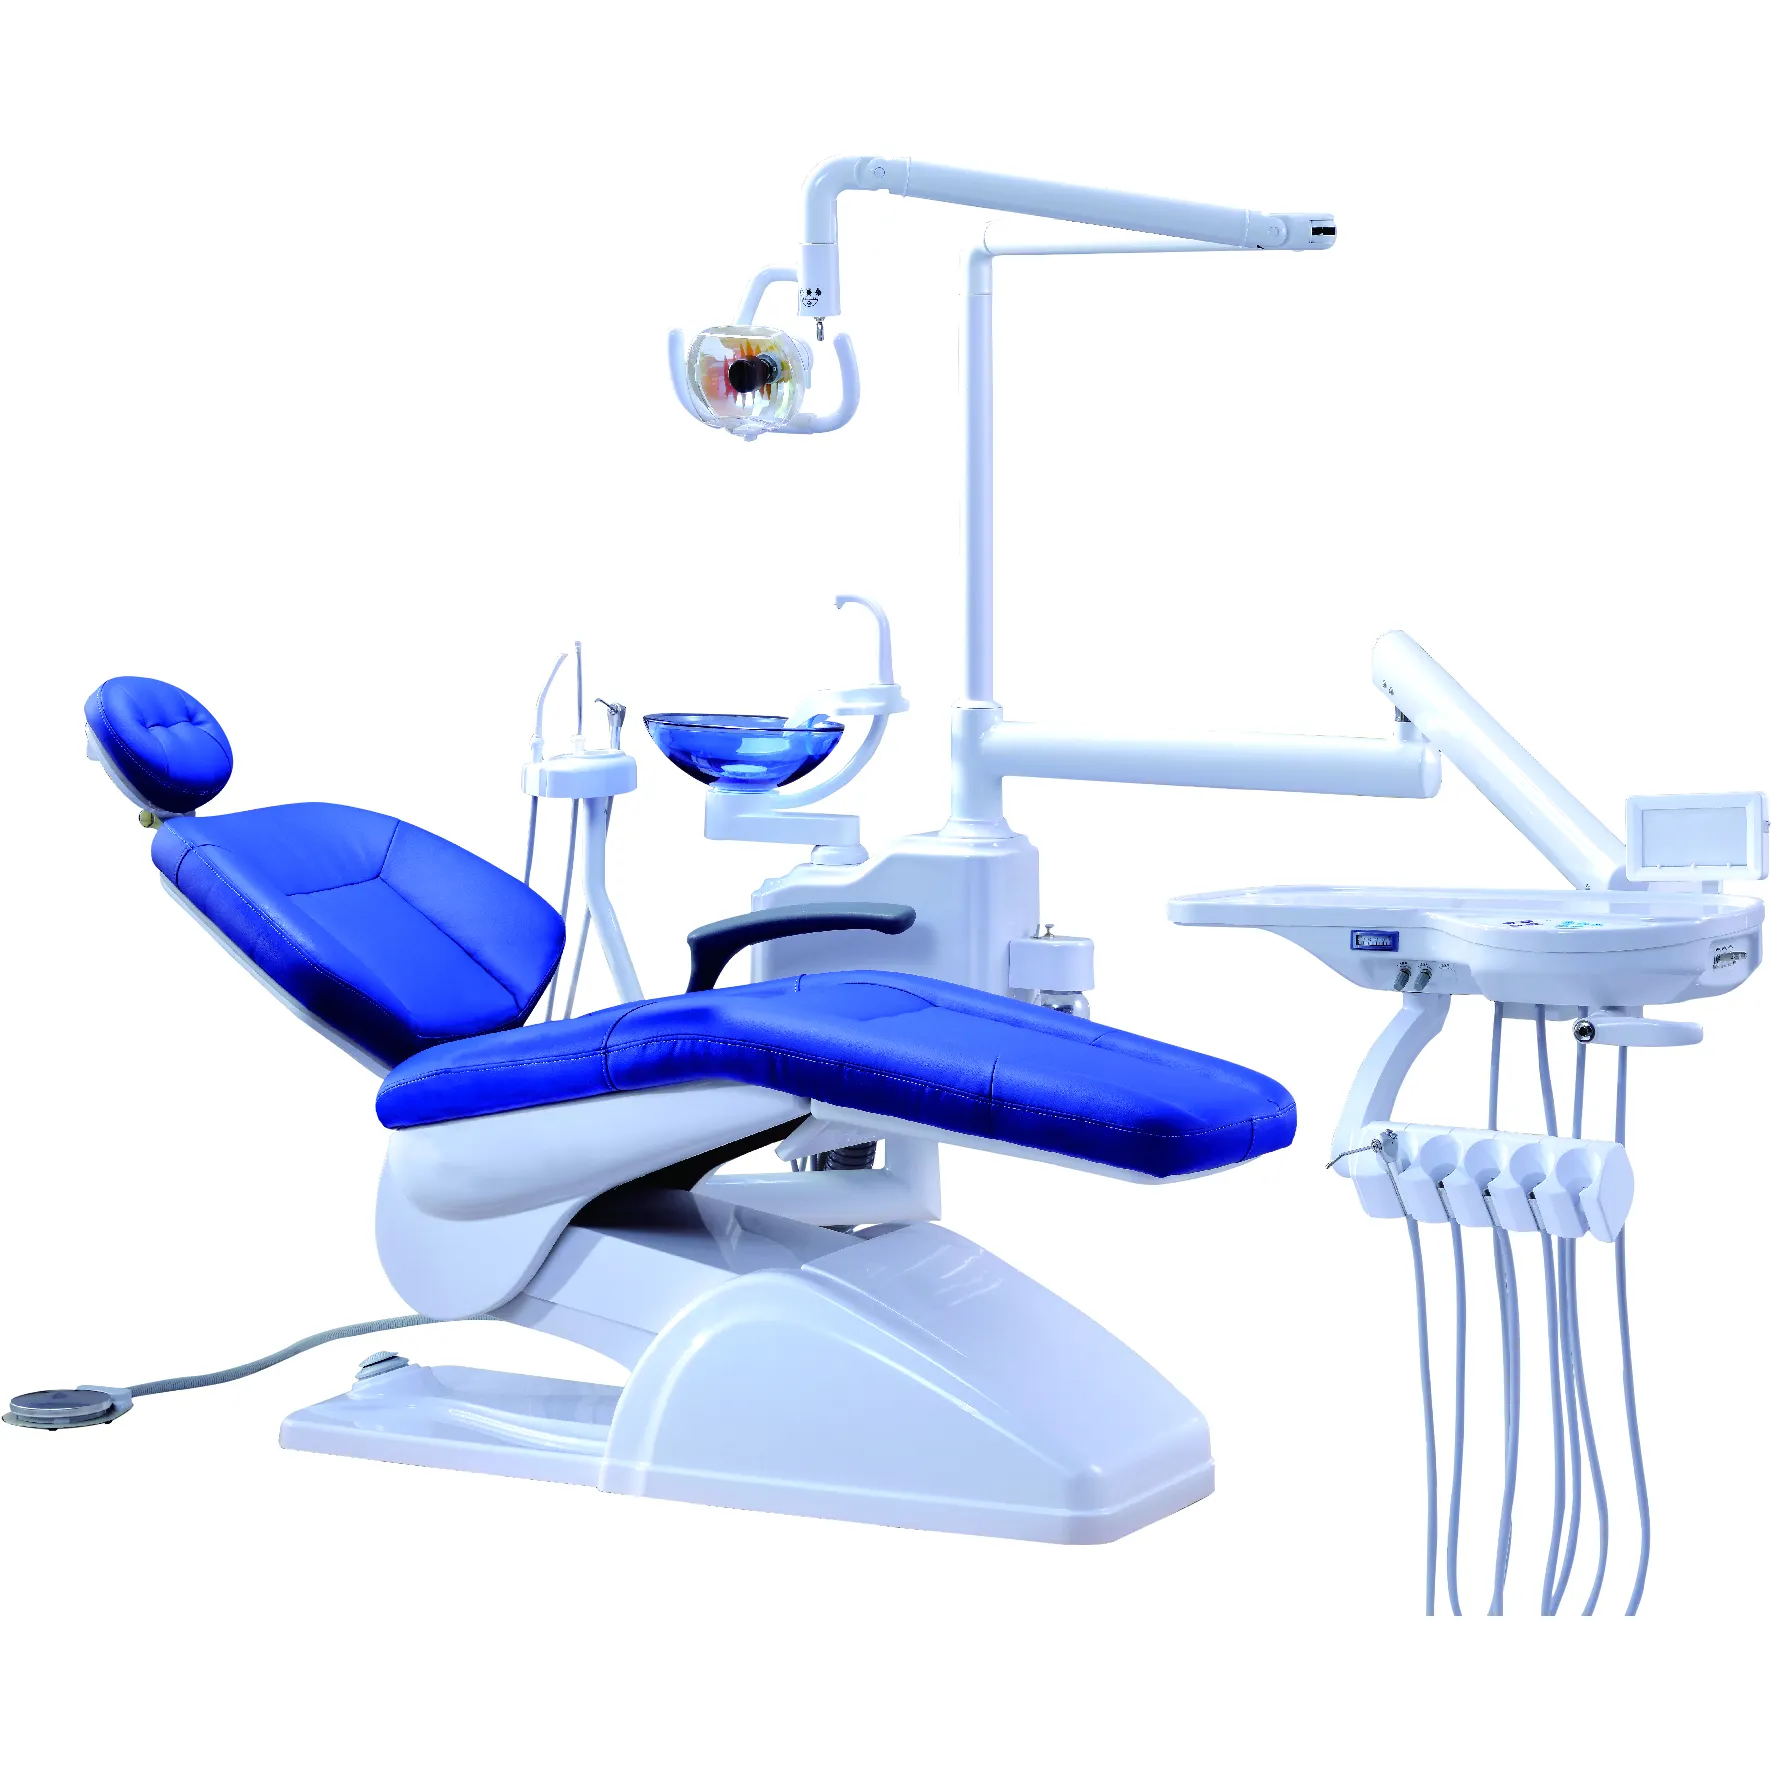 Ensemble complet de chaise dentaire, équipement dentaire, prix unique fournisseur 920, ensemble complet de chaise de dentiste, unité dentaire